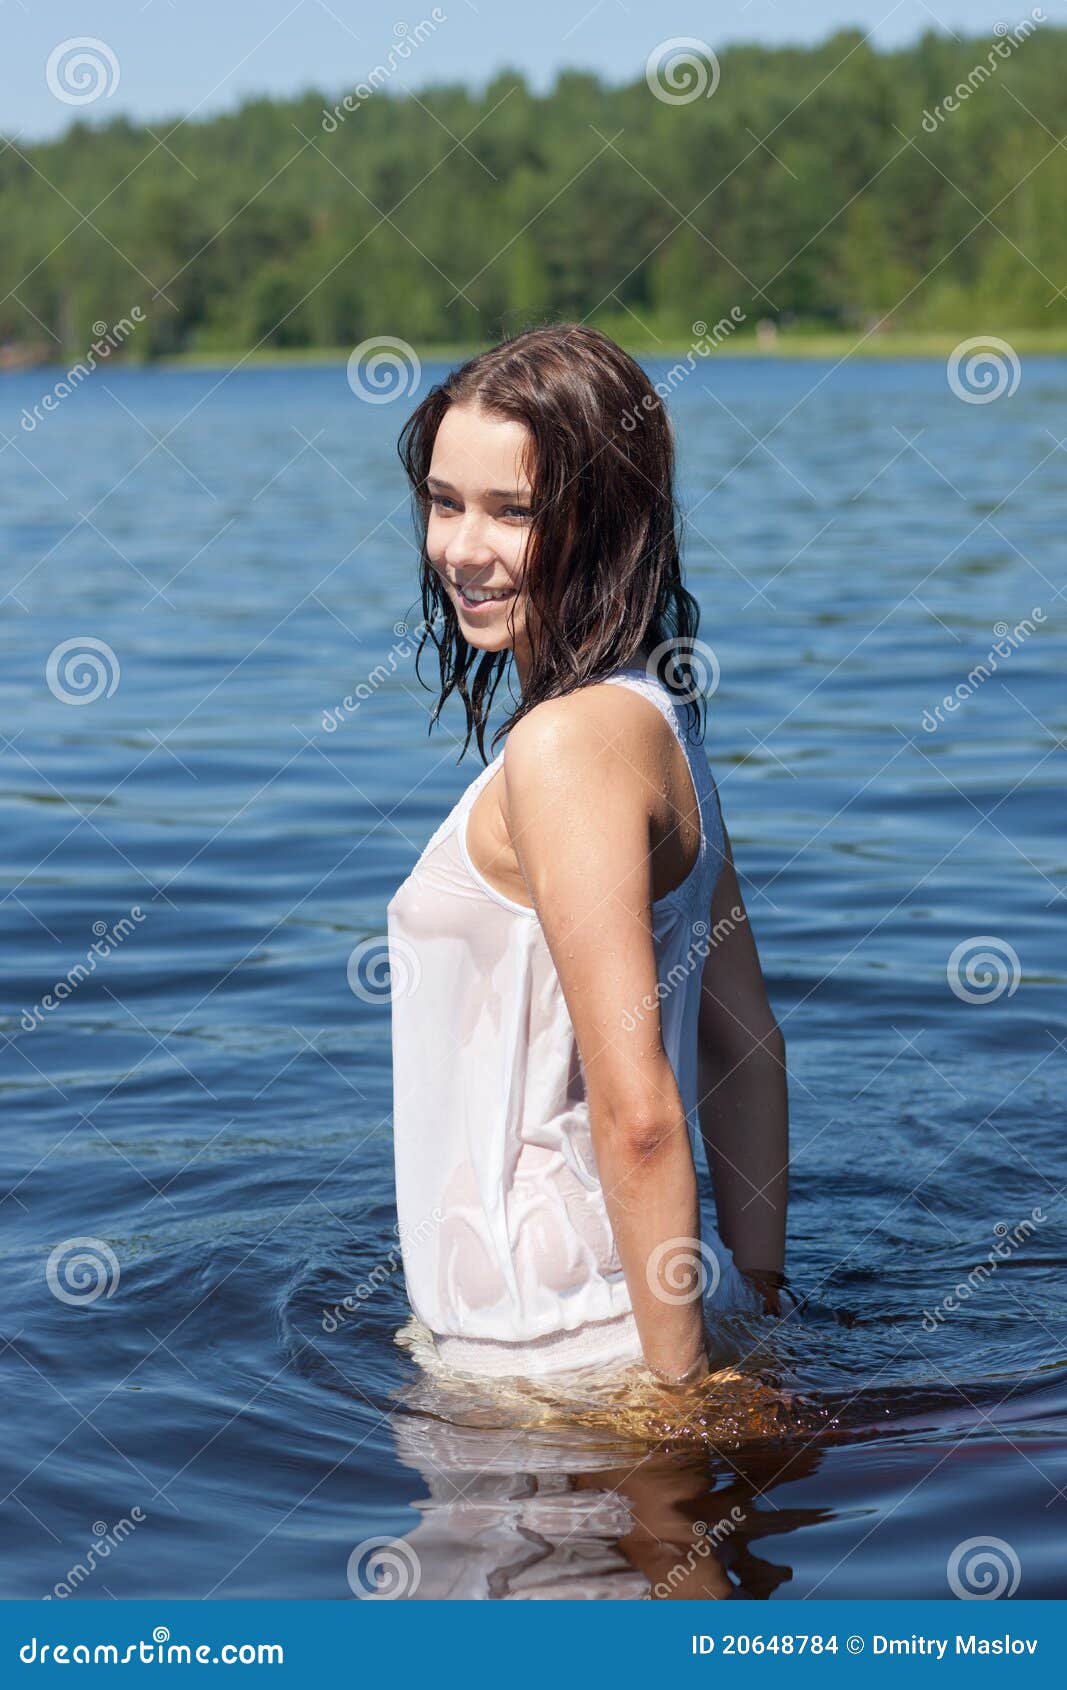 Girl in river Photos